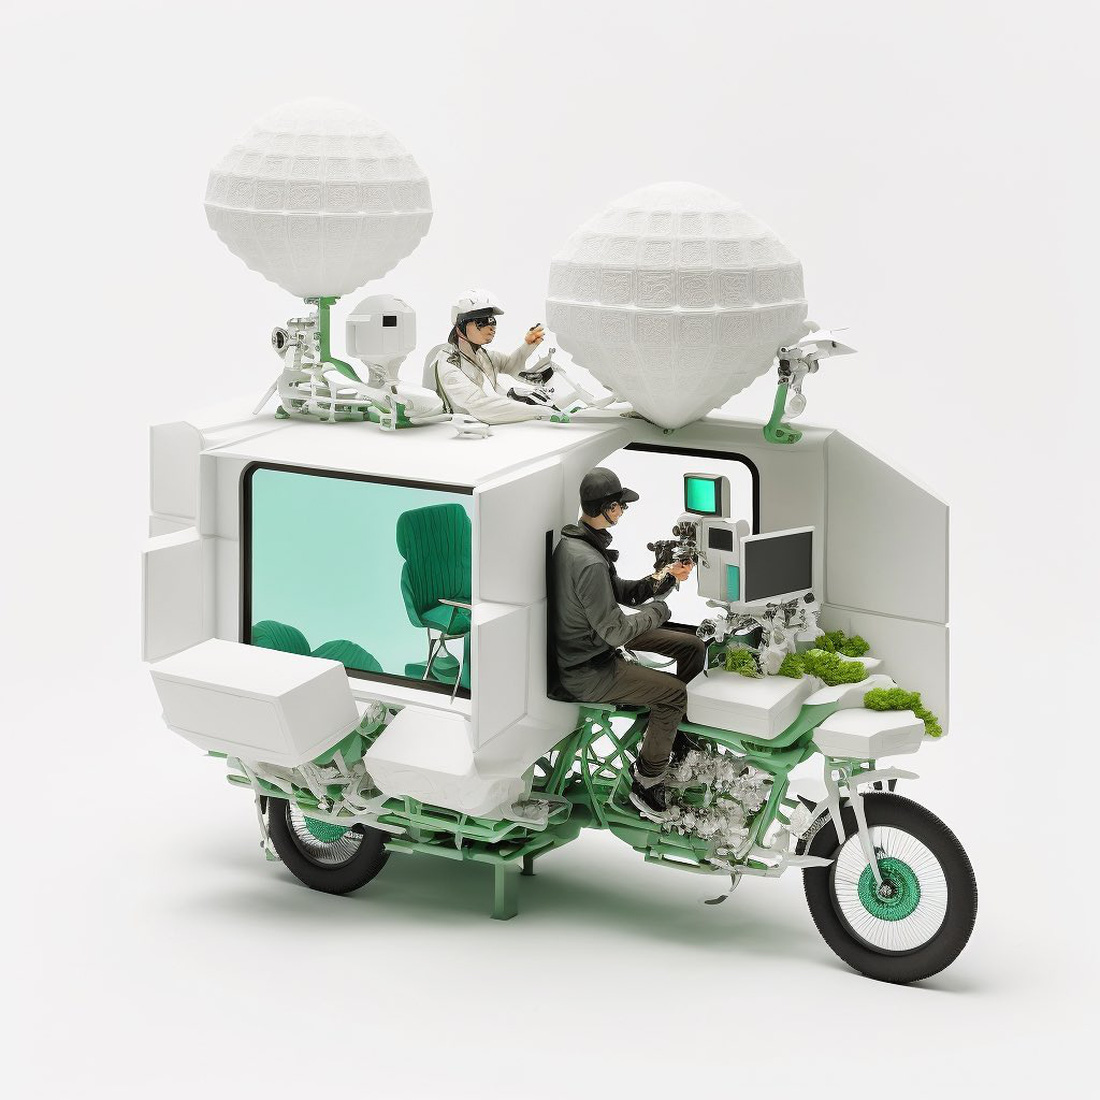 Bàn làm việc lai xe máy trong tưởng tượng của AI: Tương lai bớt nhàm chán của dân văn phòng - Ảnh 4.